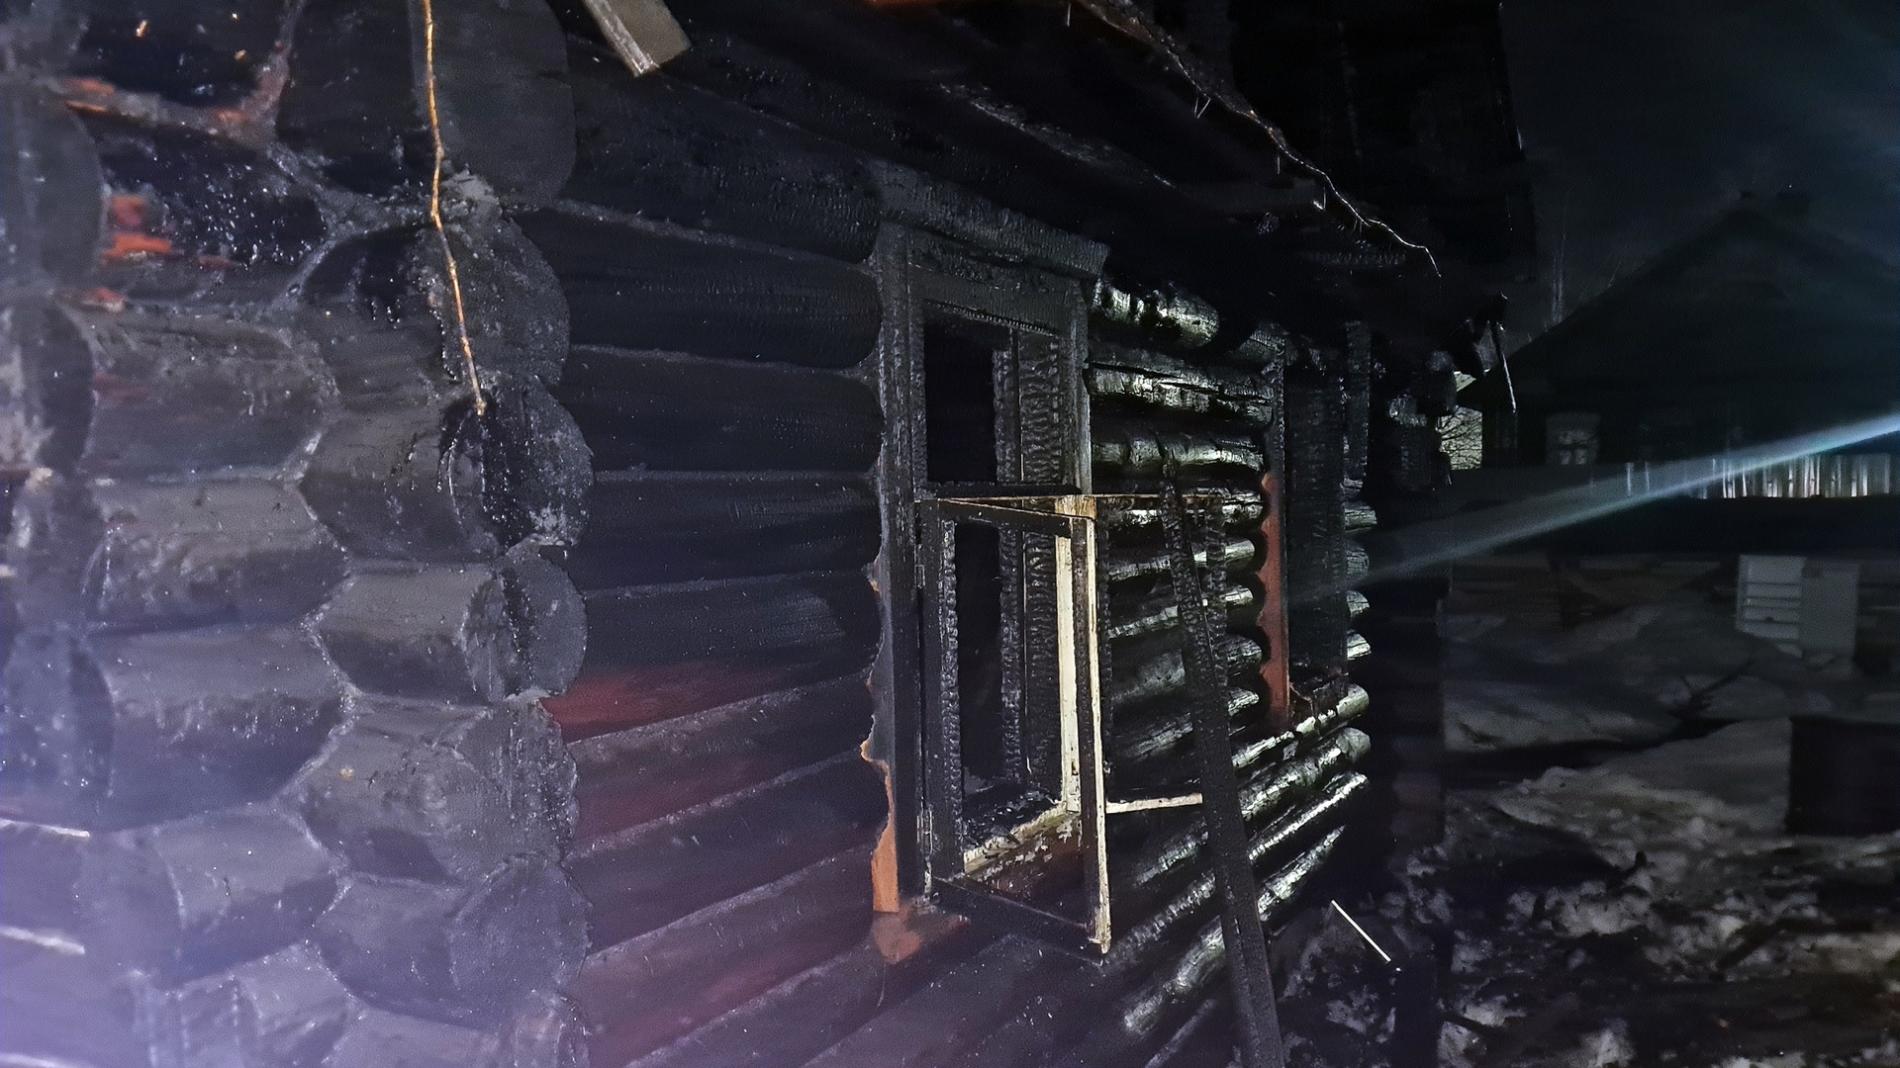 Из-за неисправной печи в частном доме Вологде произошёл пожар